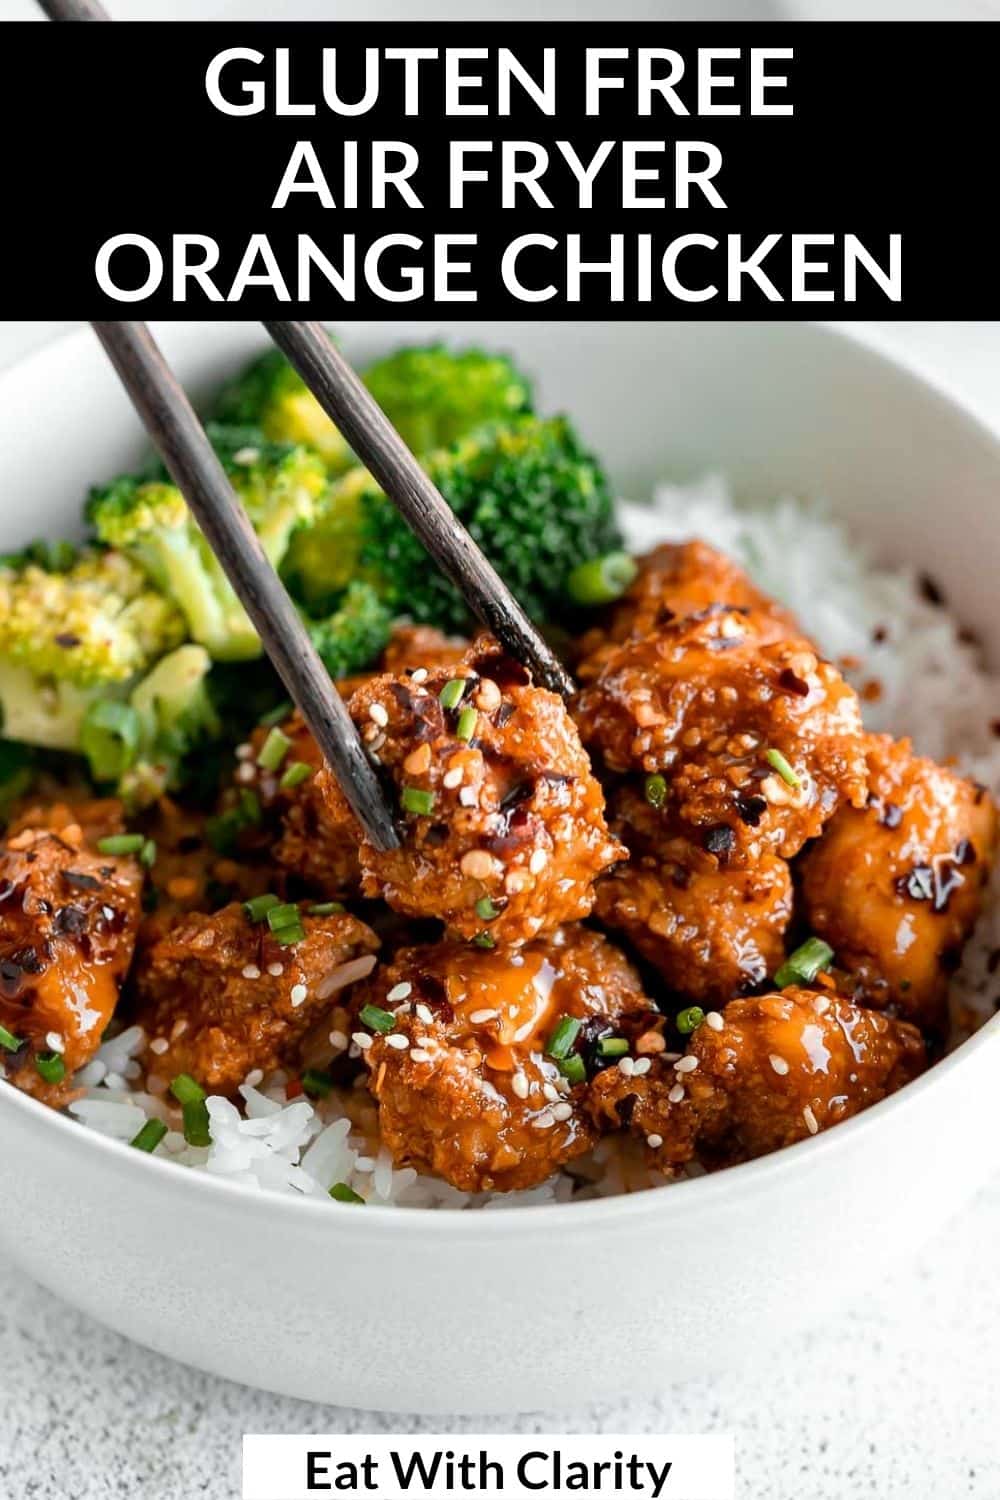 Air Fryer Orange Chicken - Eat With Clarity